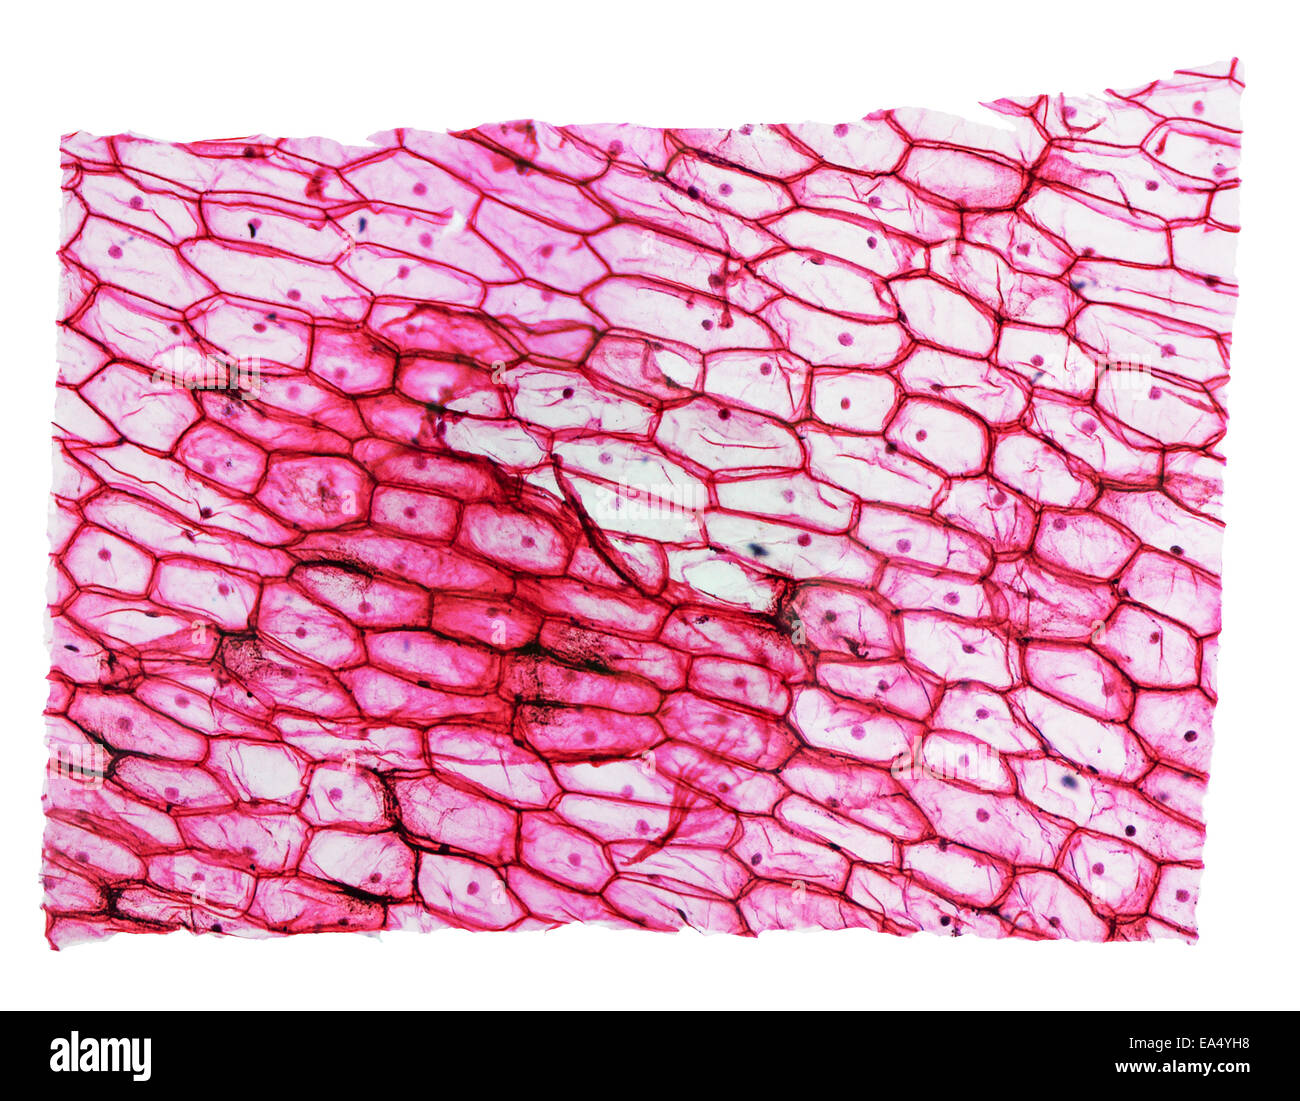 Leichte Mikrophotographie eine Zwiebel Epidermus Zellen durch ein Mikroskop  gesehen Stockfotografie - Alamy